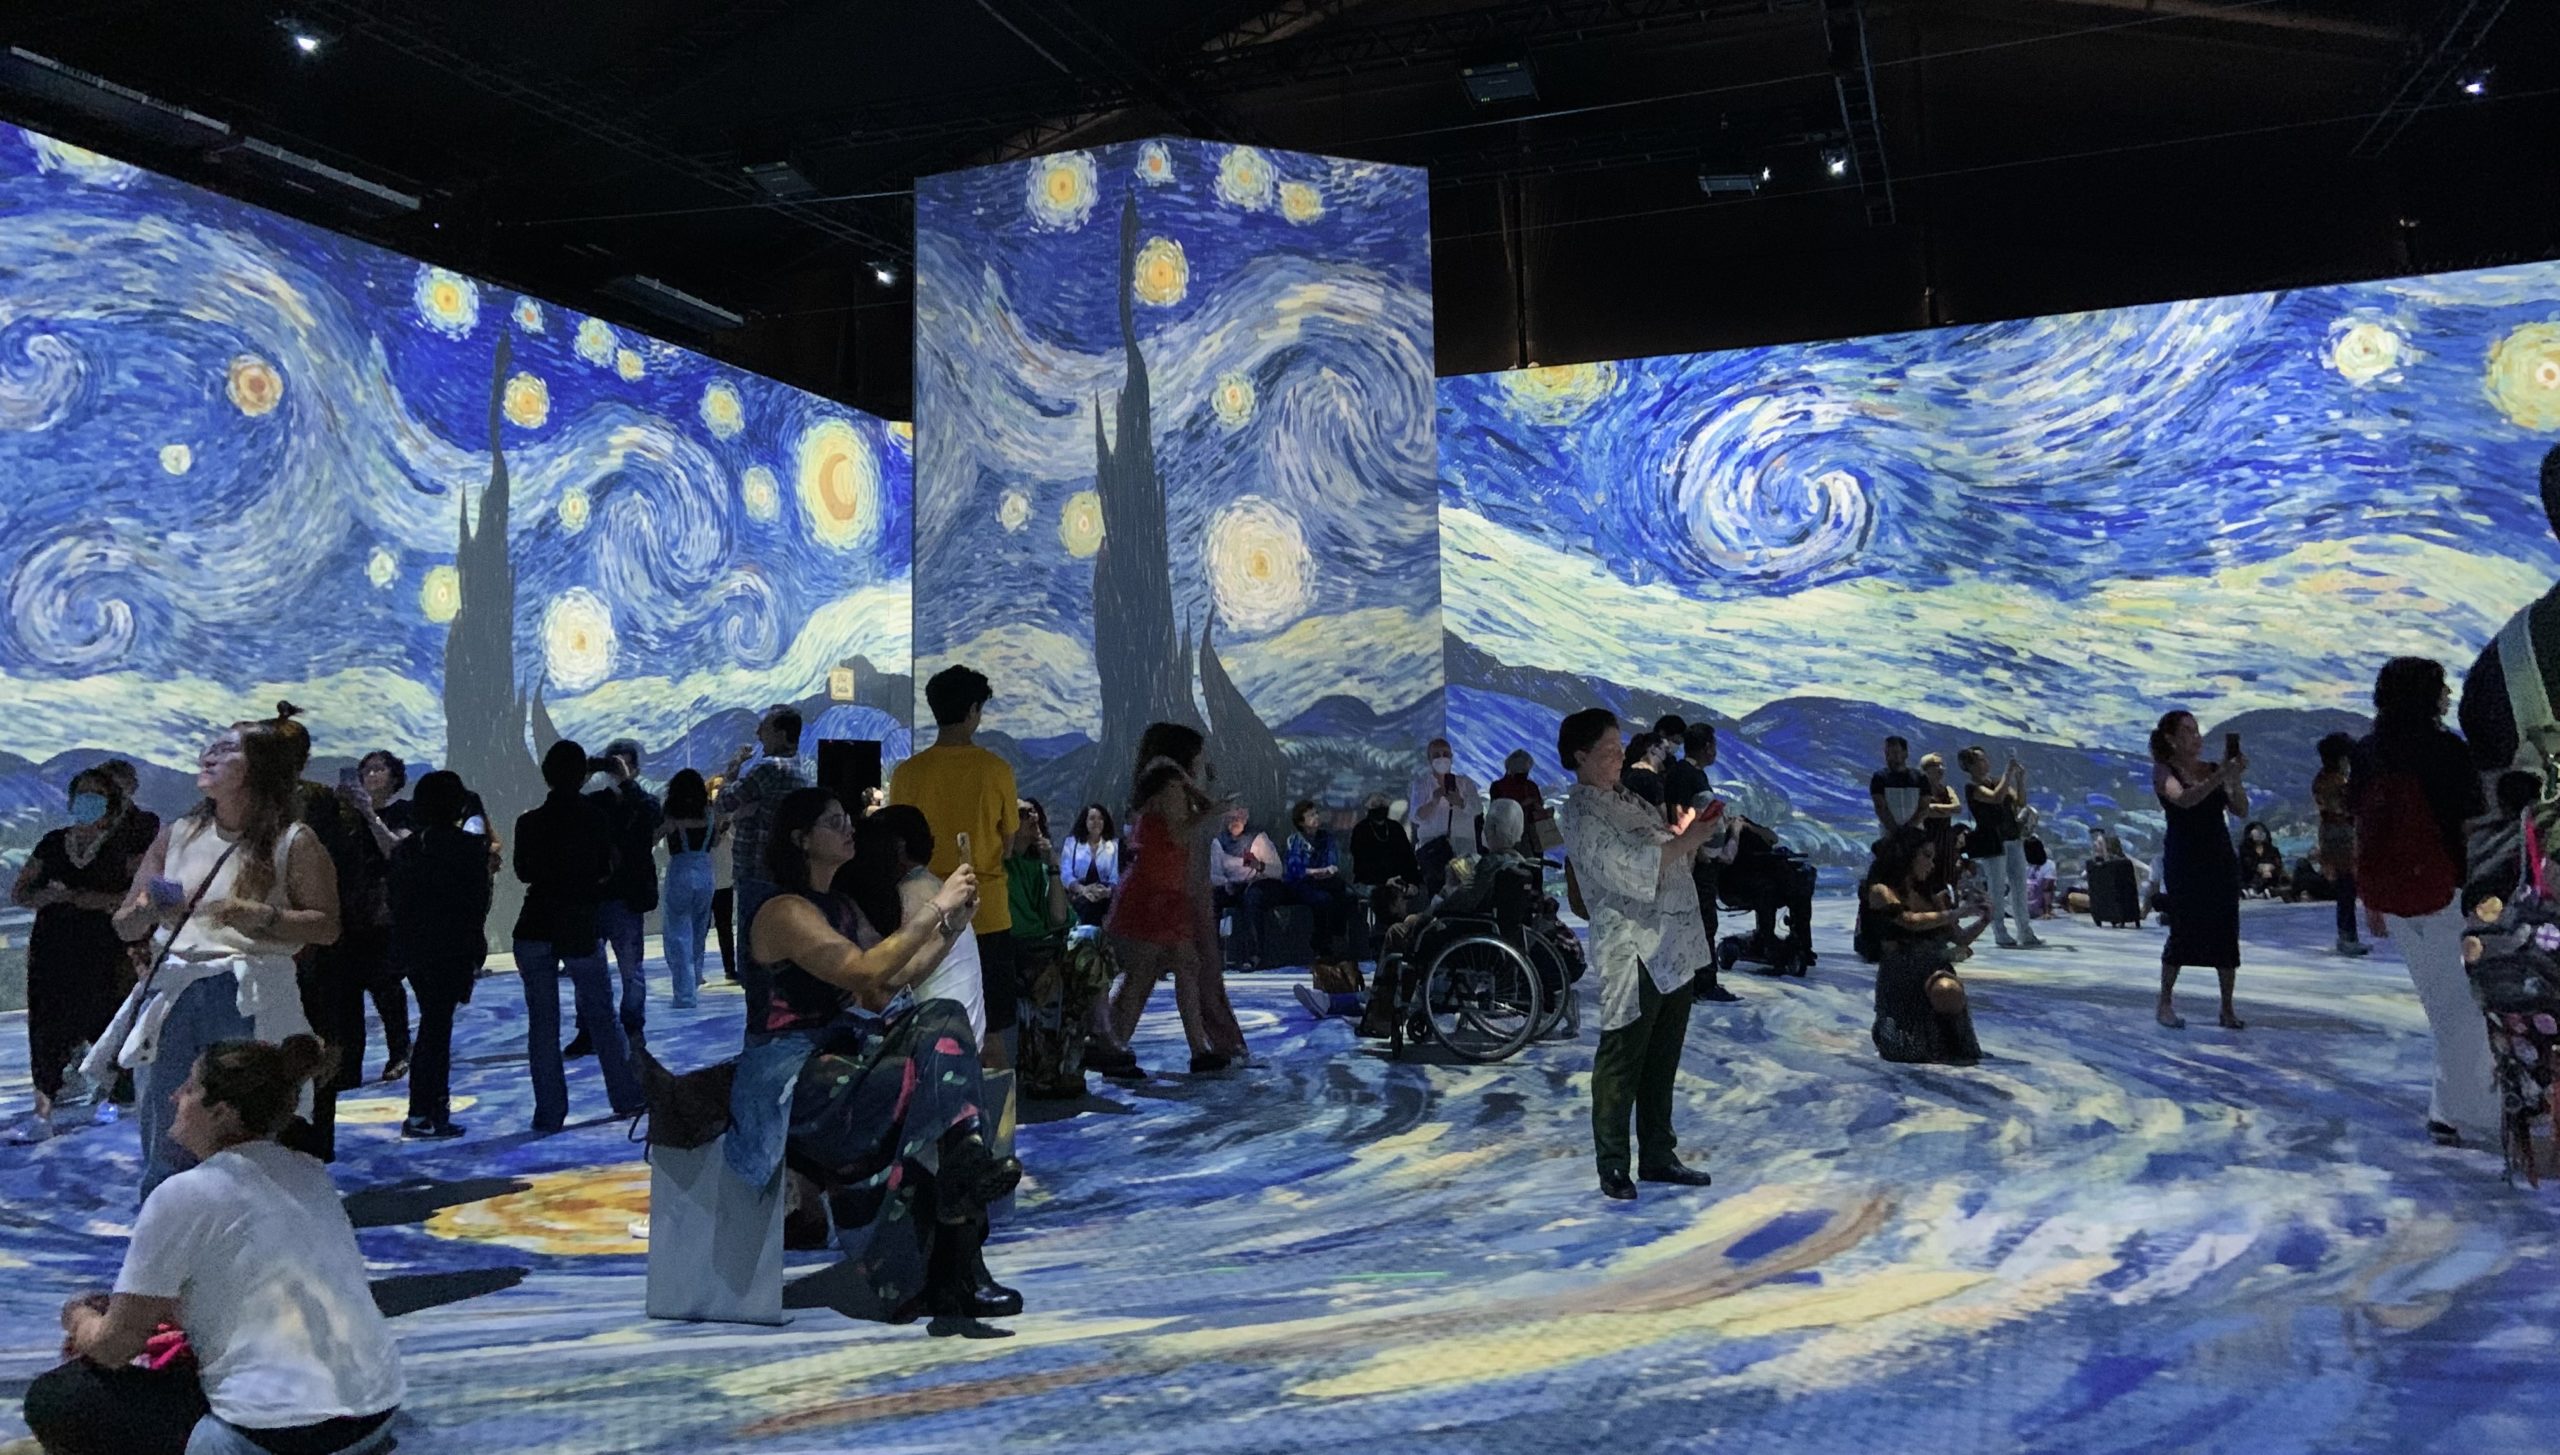 Imagem da sala principal projetando uma das obras mais famosas de Van Gogh, A Noite Estrelada, e várias pessoas prestigiando a apresentação, tanto em pé quanto sentadas, no chão ou em bancos.